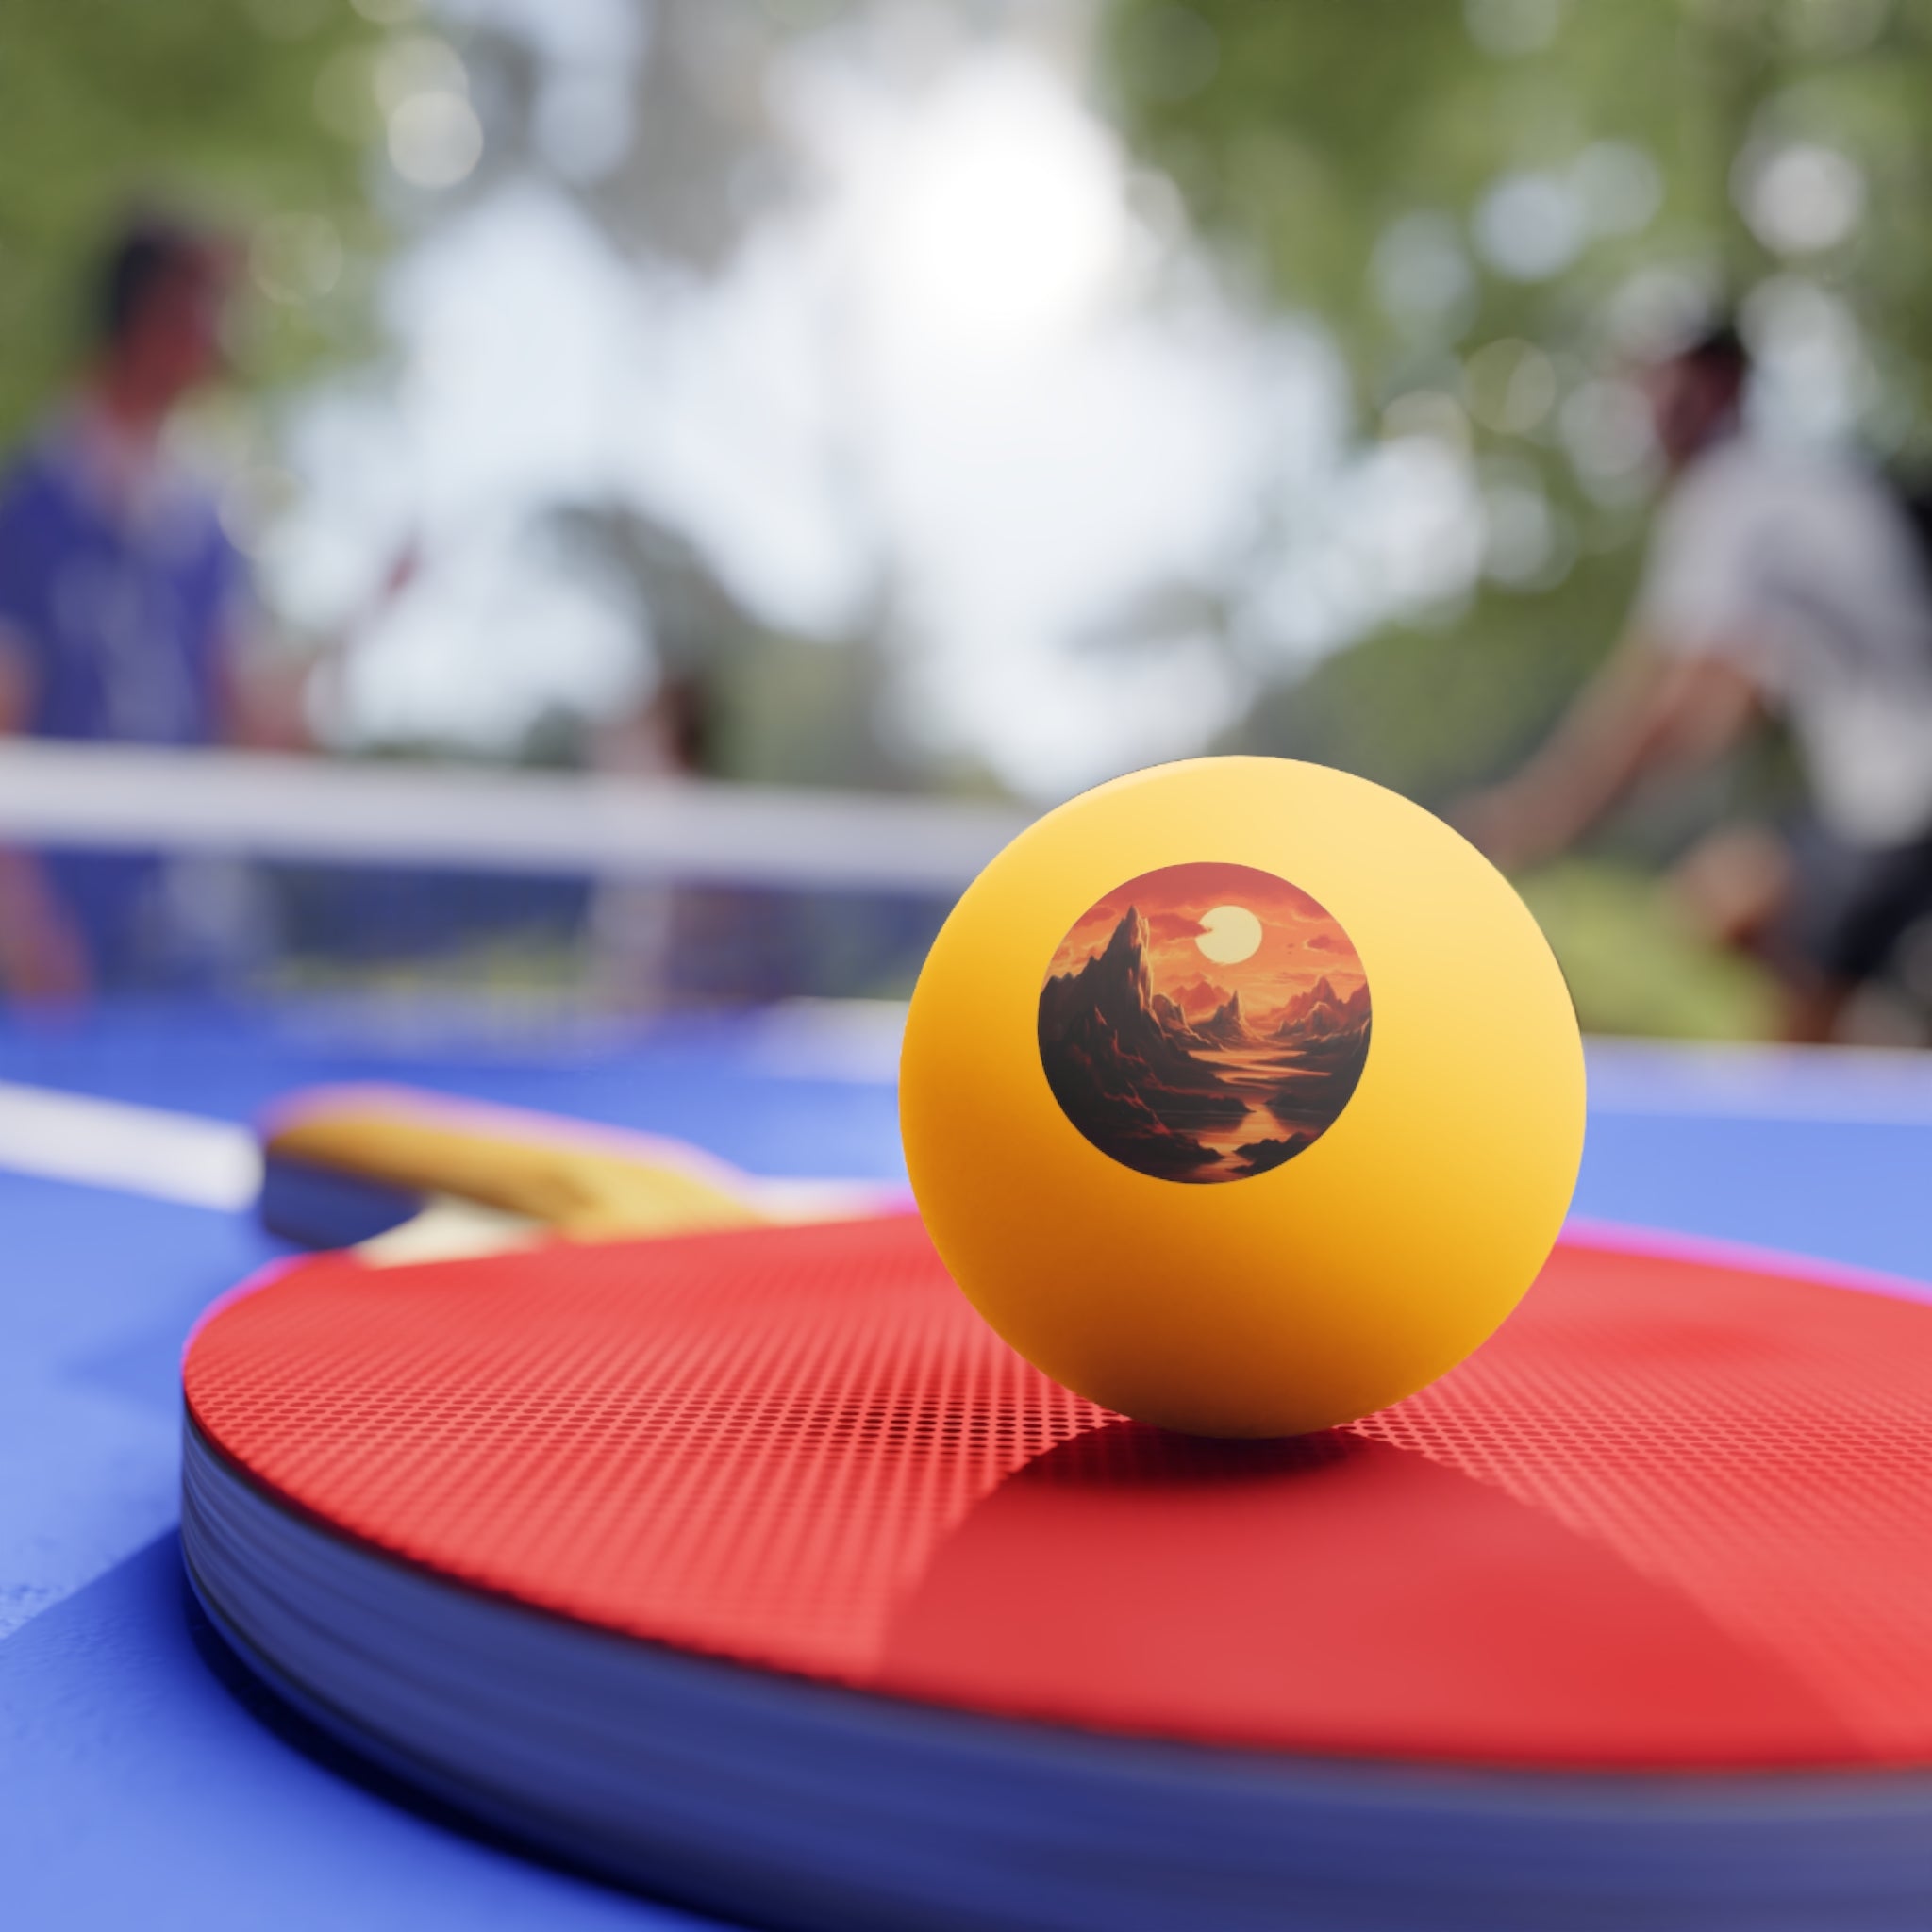 Ping Pong Balls, 6 pcs - Pop Art - Golden Hour Designs 04